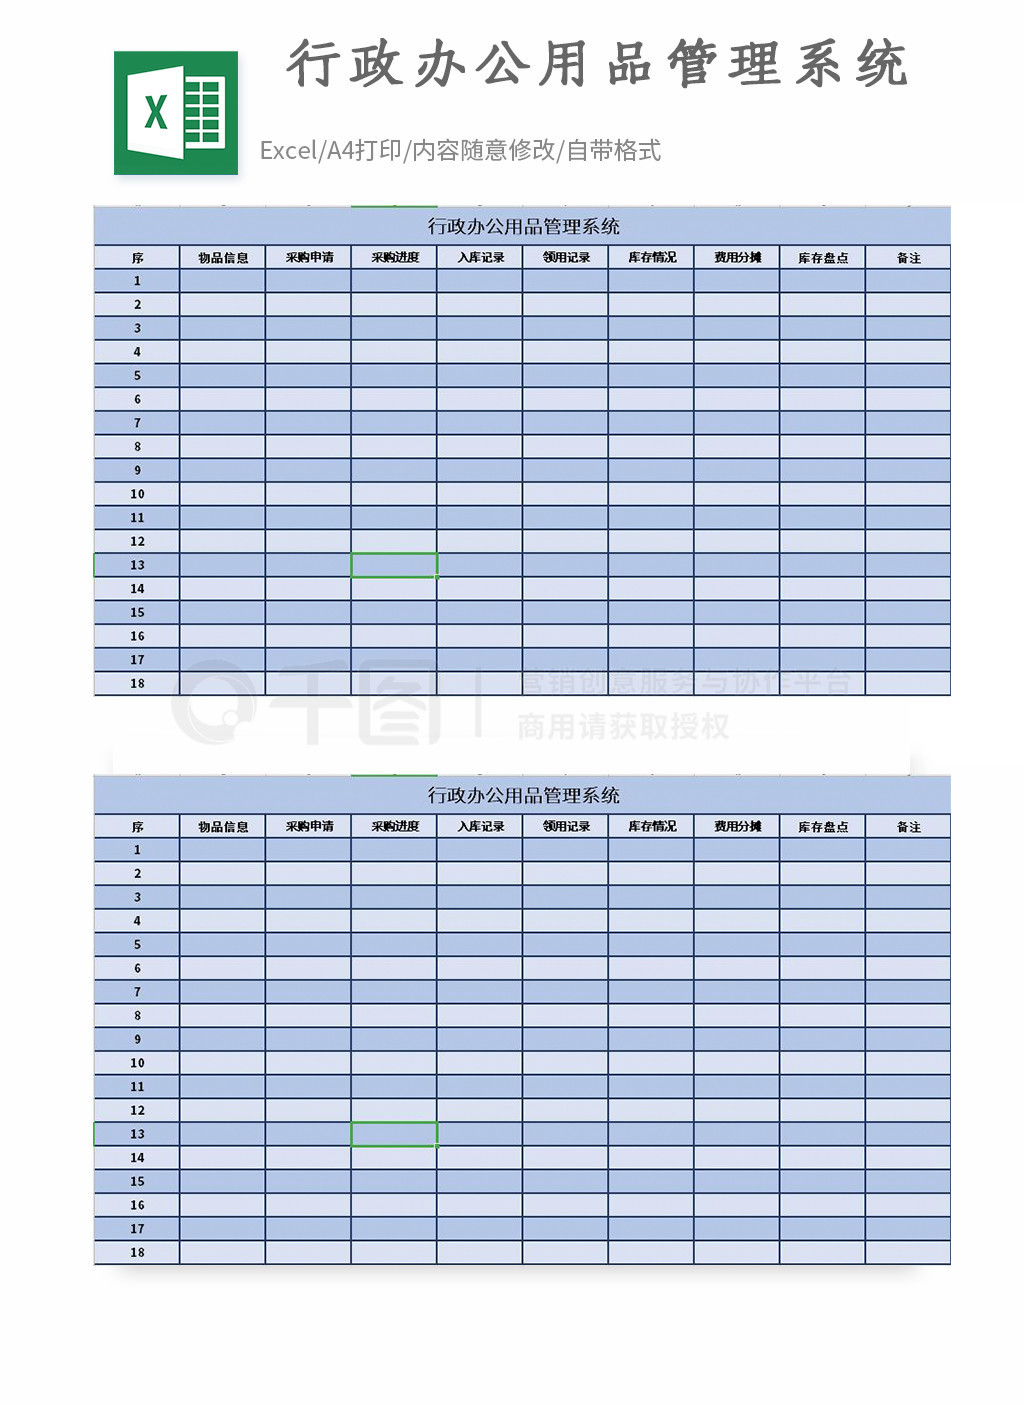 行政办公用品管理系统Excel模板